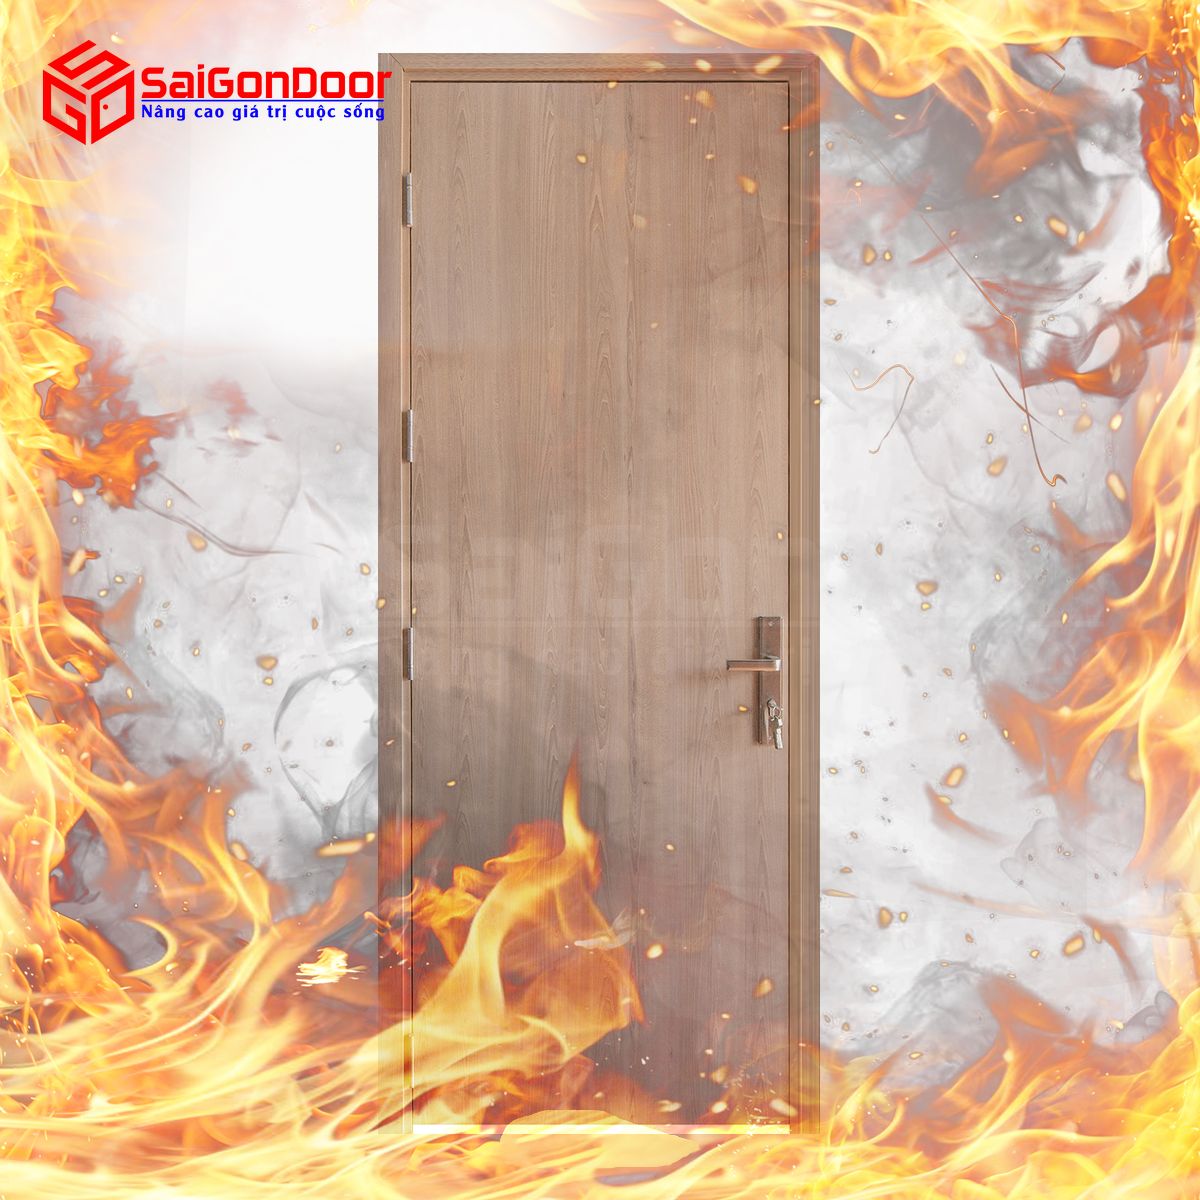 Cửa gỗ chống cháy được phân chia theo thời gian ngăn cháy như 60 phút, 90 phút và 120 phút